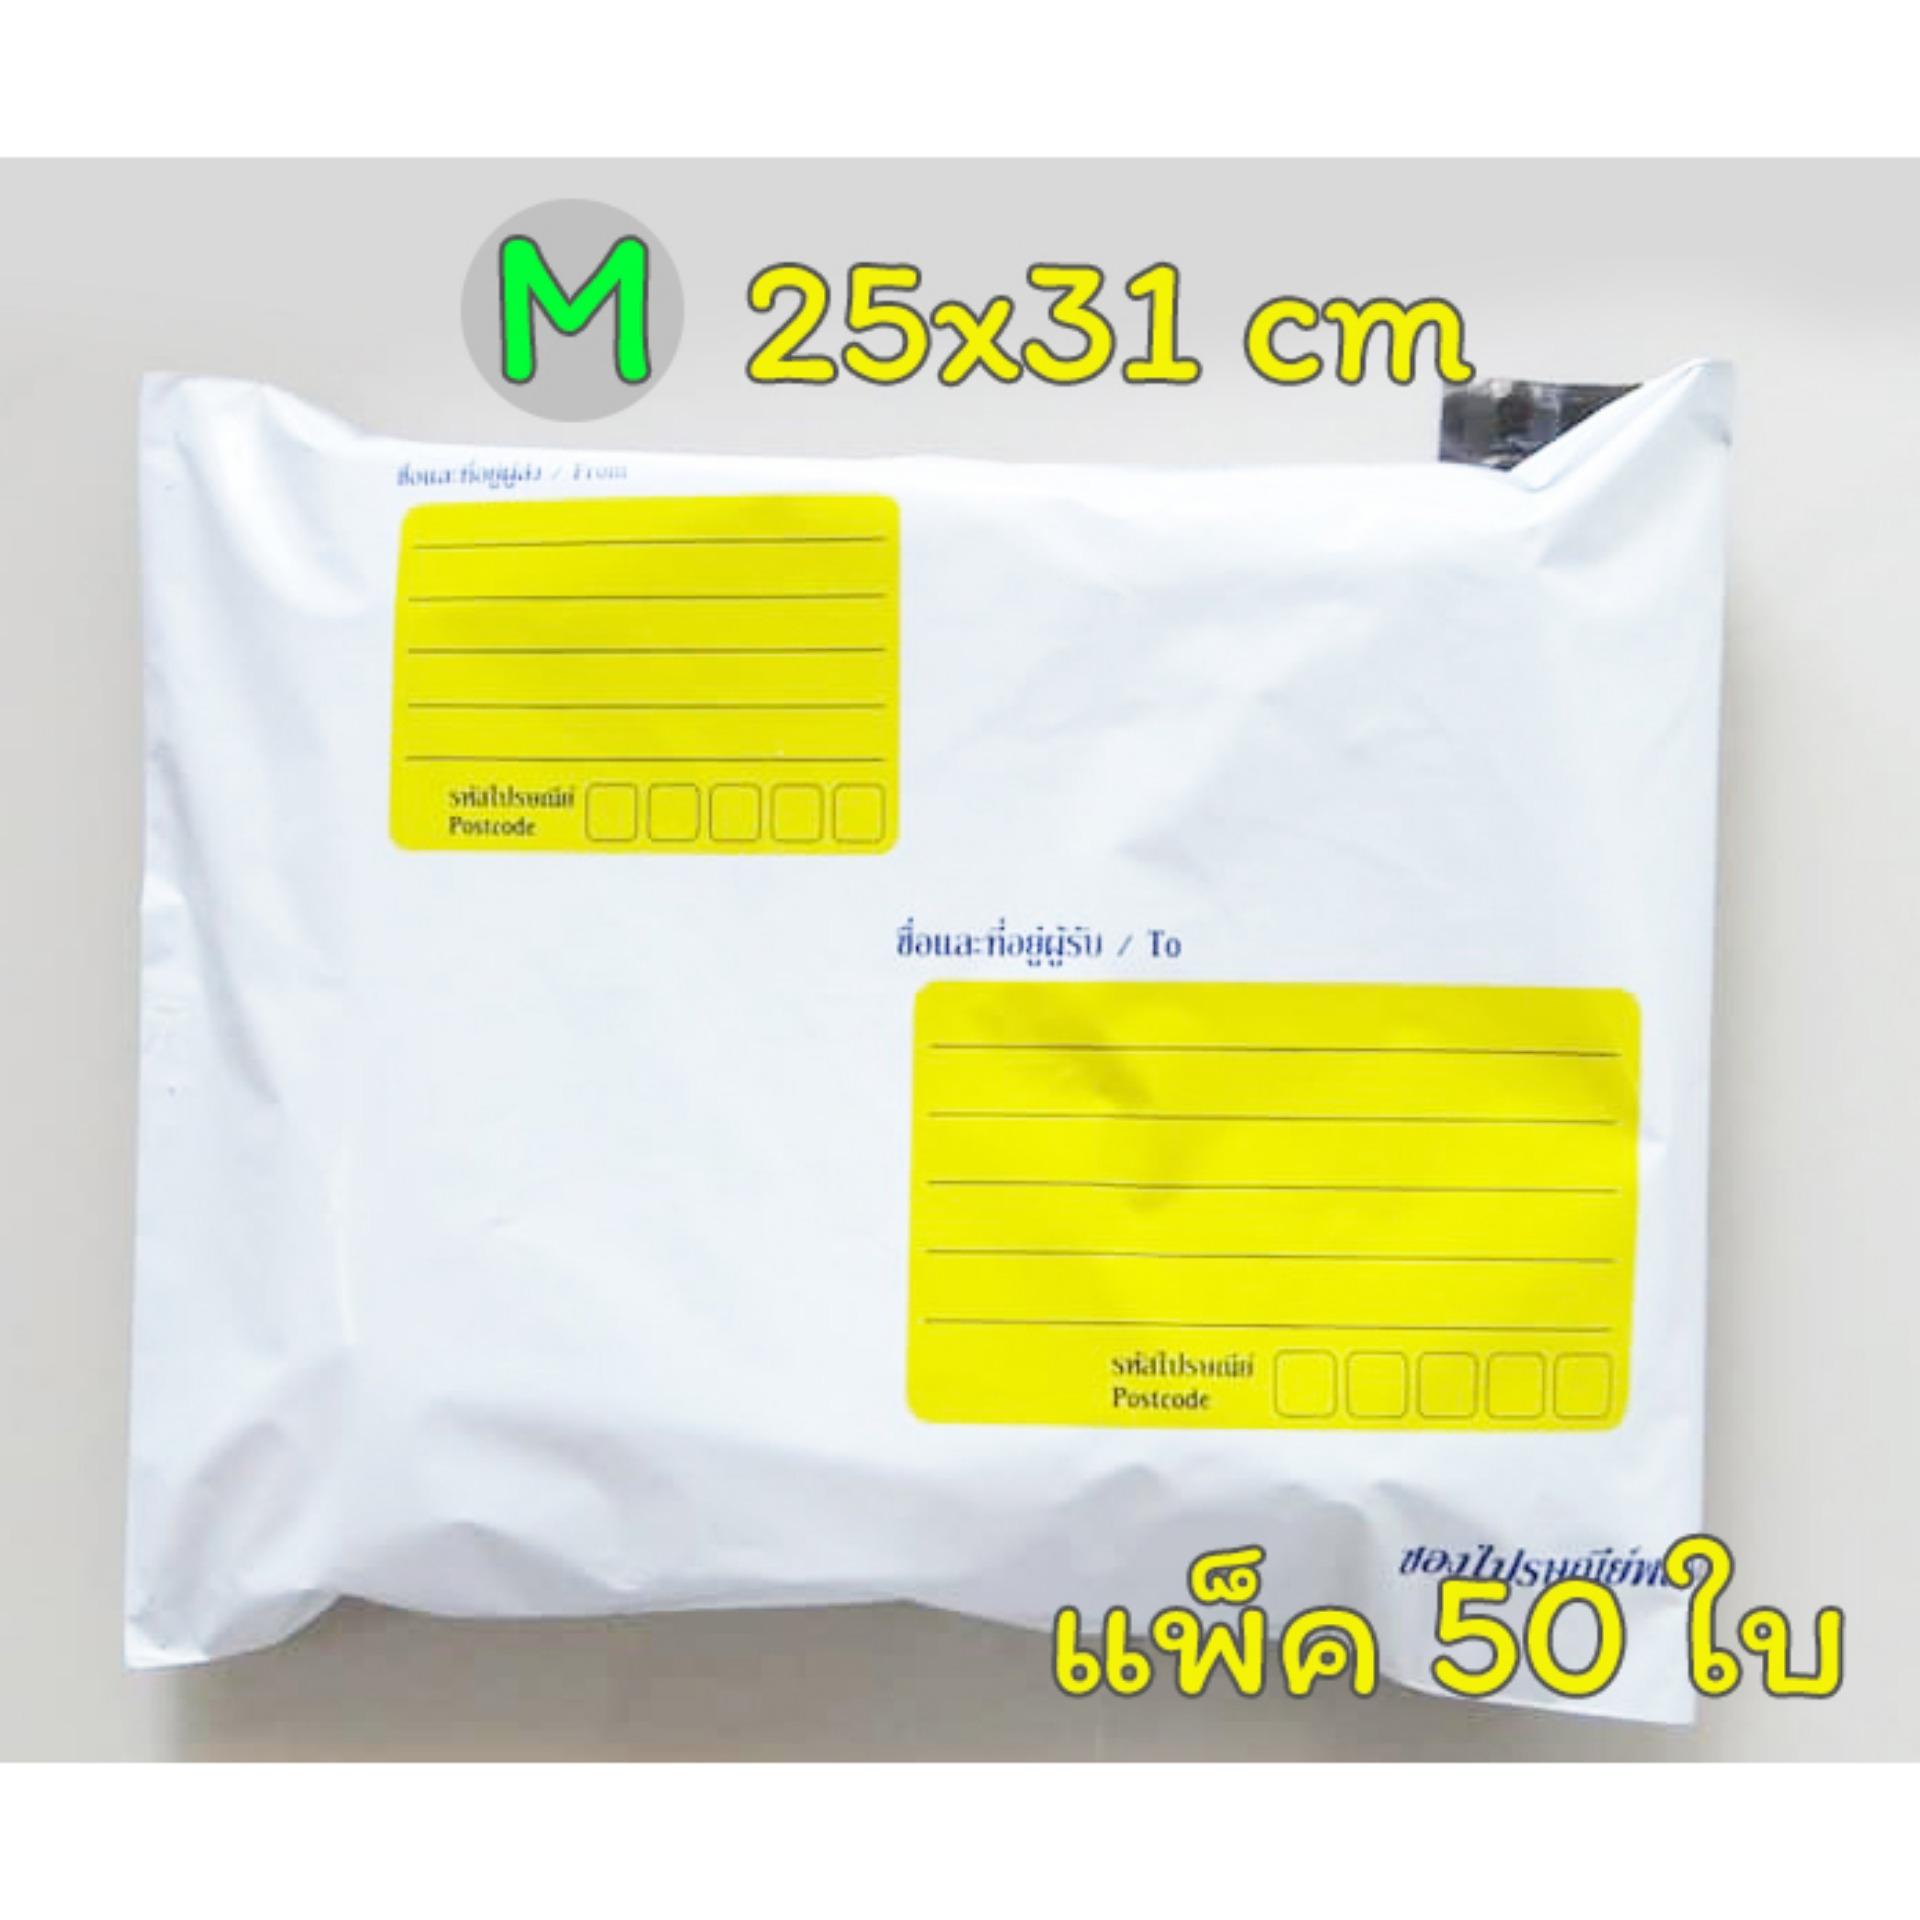 ซองส่งไปรษณีย์ มีจ่าหน้า พิมพ์จ่าหน้า ซองพลาสติก ซองไปรษณีย์ ซองไปรษณีย์พลาสติก ถุงส่งของ สีขาว ขนาด 25x31cm A4 (แพ็ค 50 ใบ)